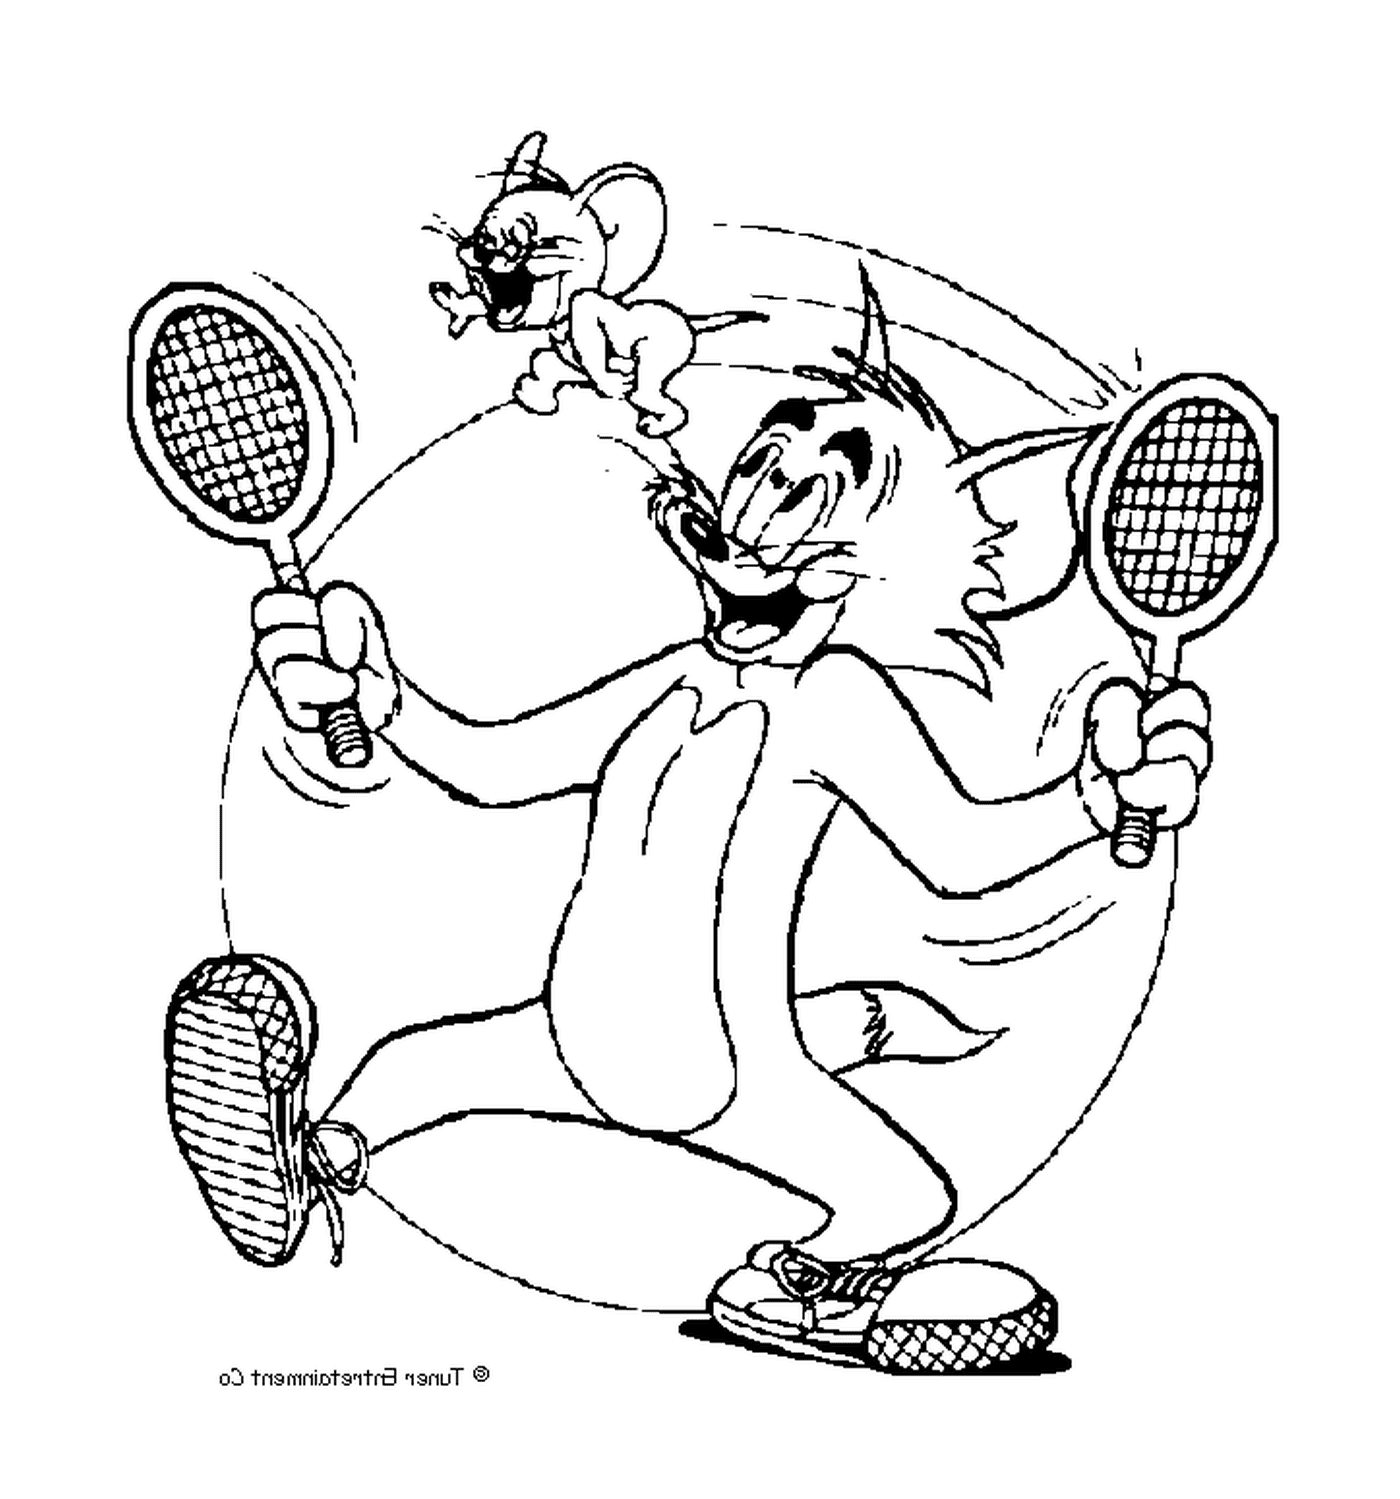  Tom spielt Tennis mit Jerry 